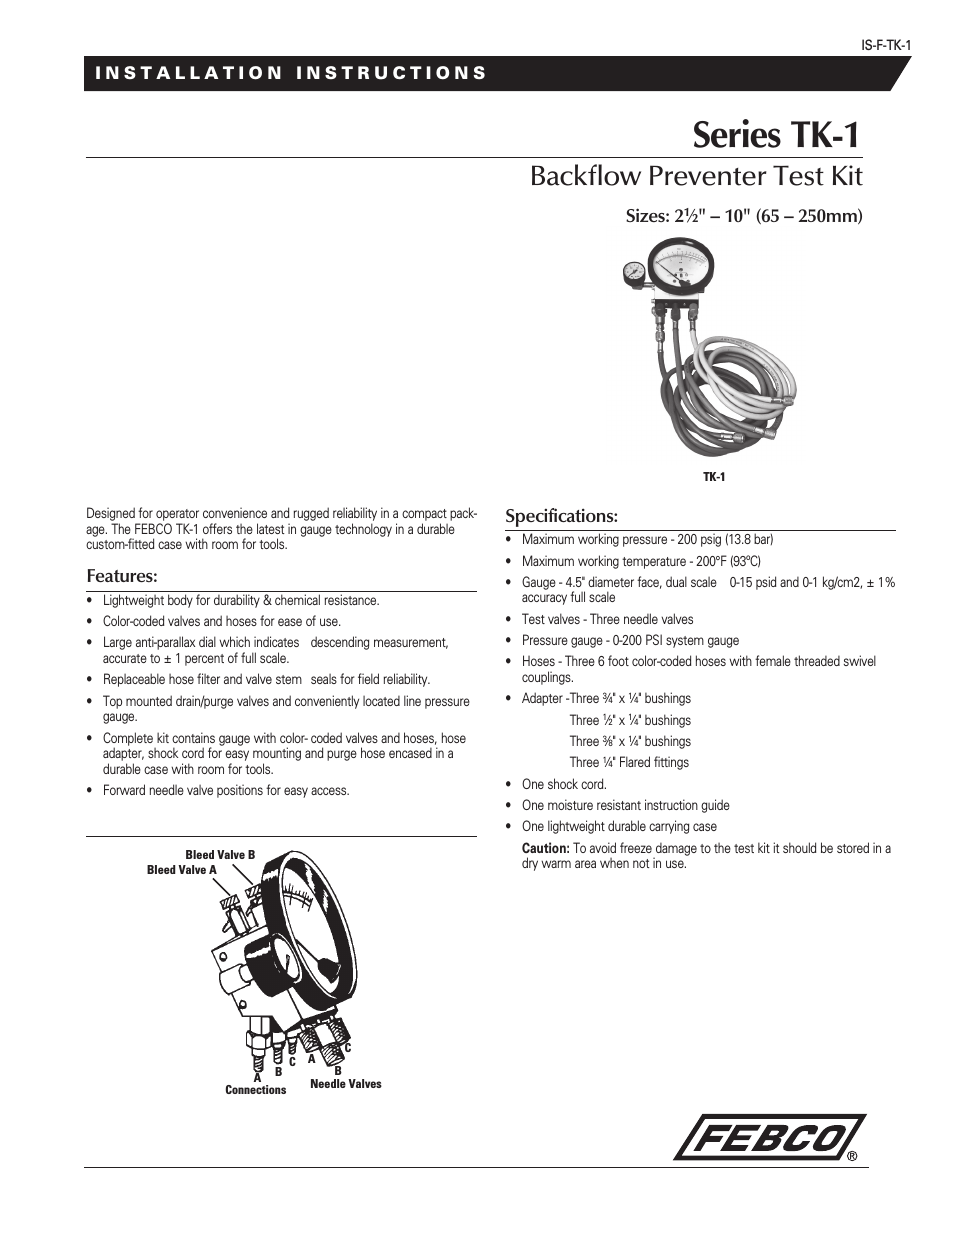 TK-1 Backflow Preventer Test Kit